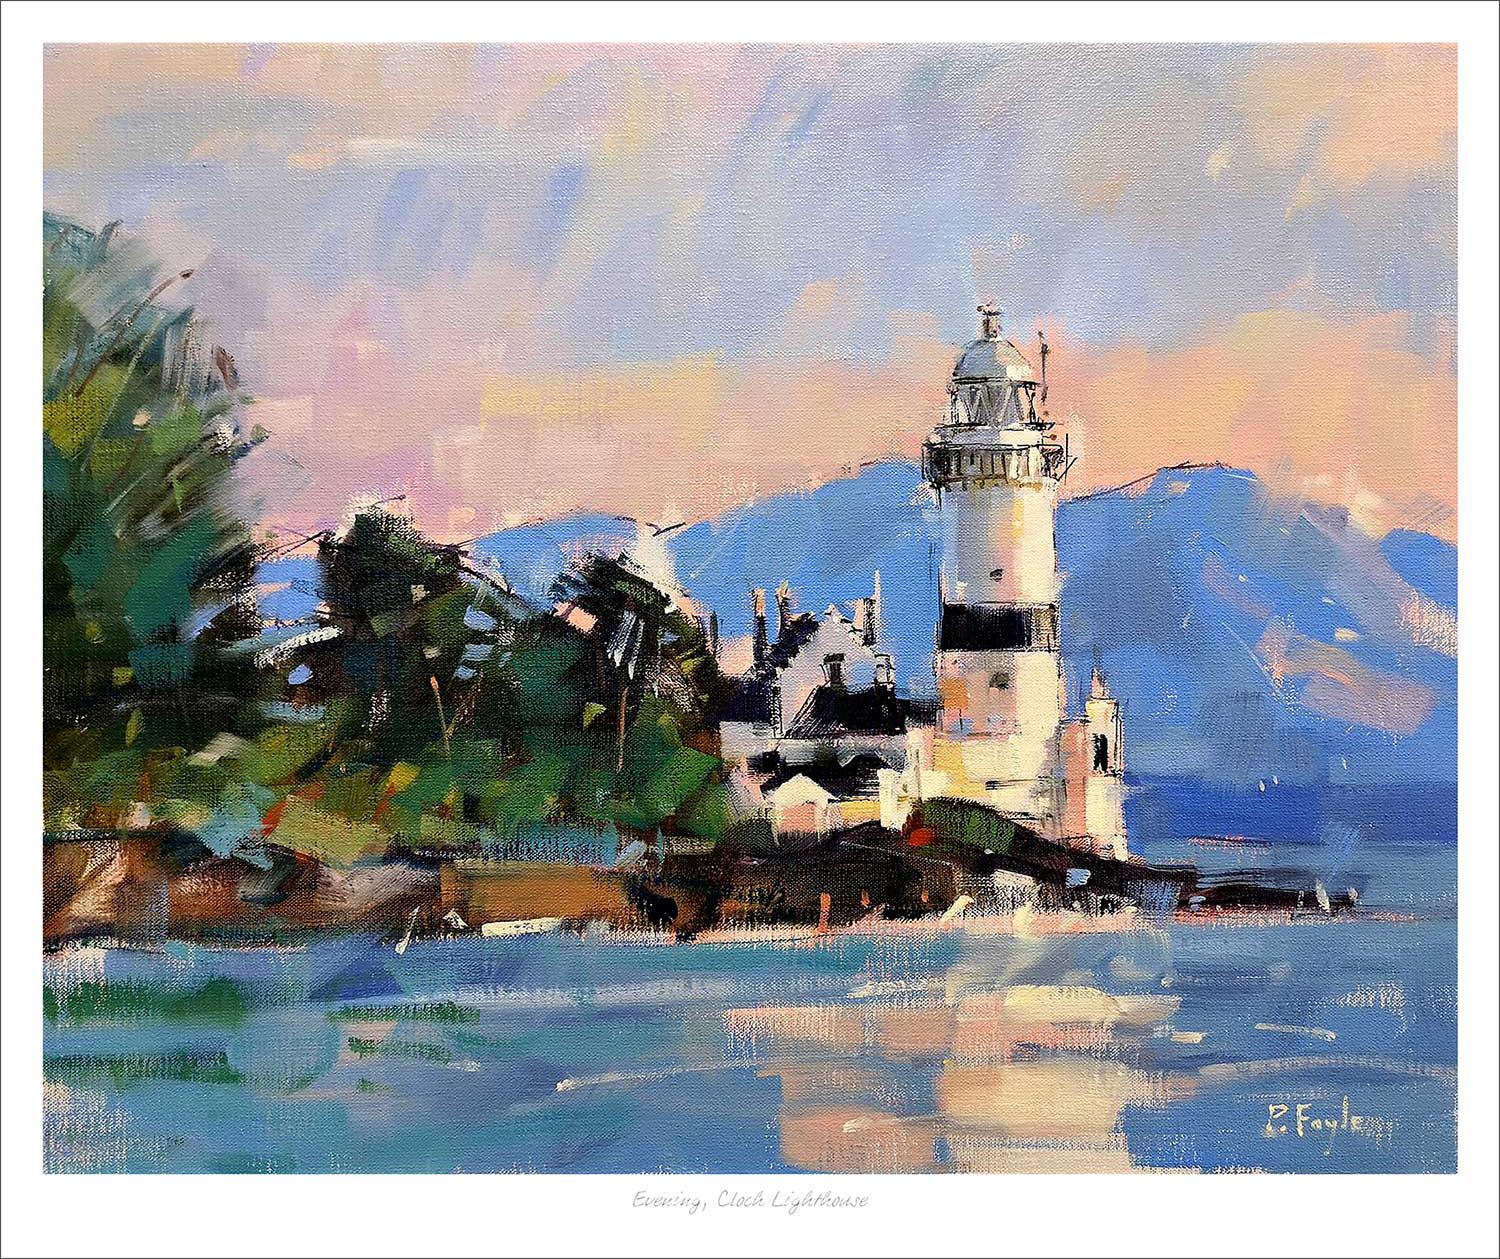 Evening, Cloch Lighthouse Art Print from an original painting by artist Peter Foyle